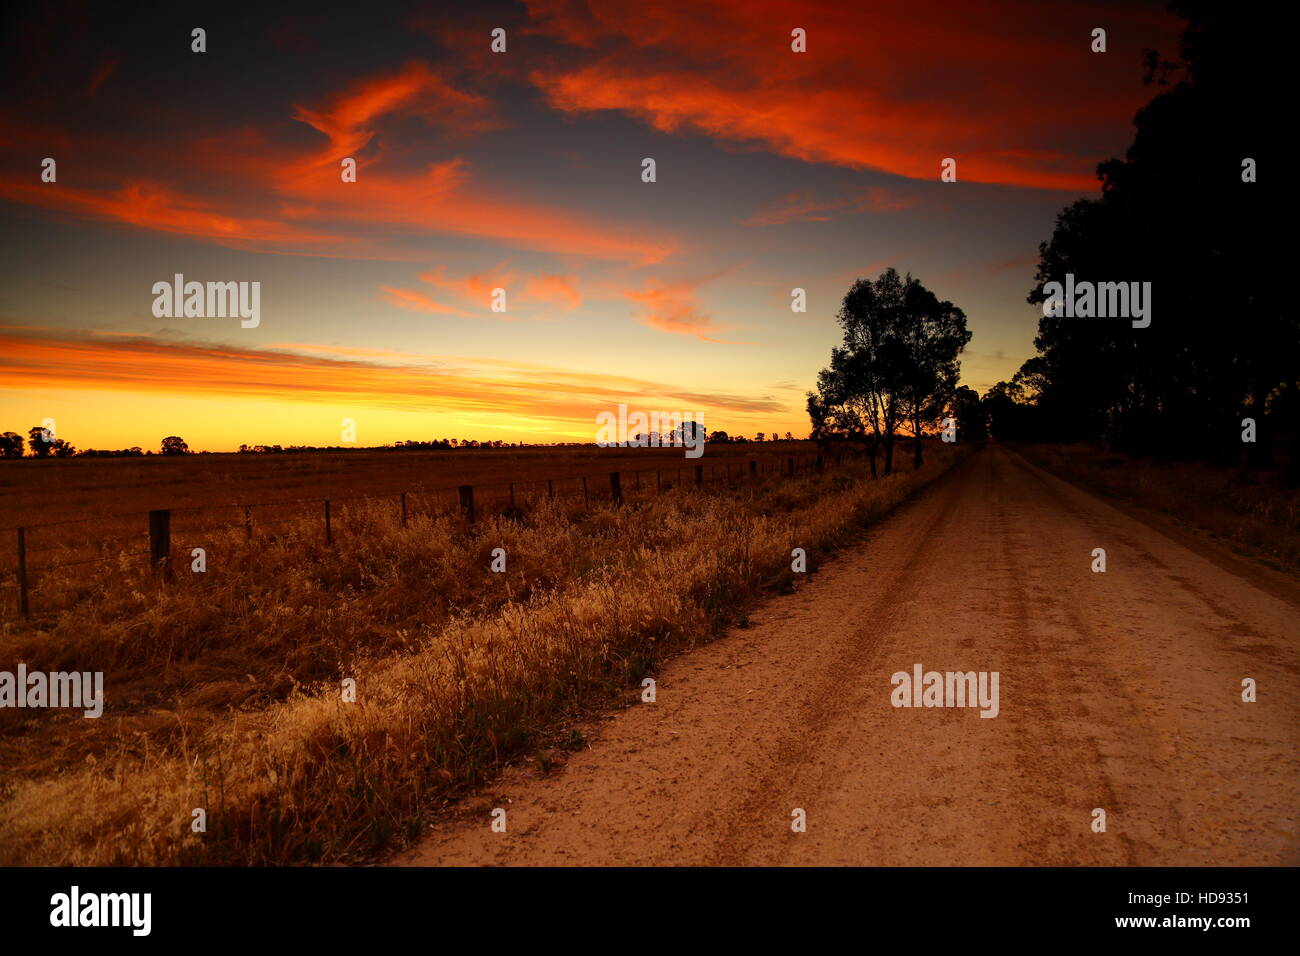 Terrain agricole coucher du soleil sur une route de l'Australie Banque D'Images